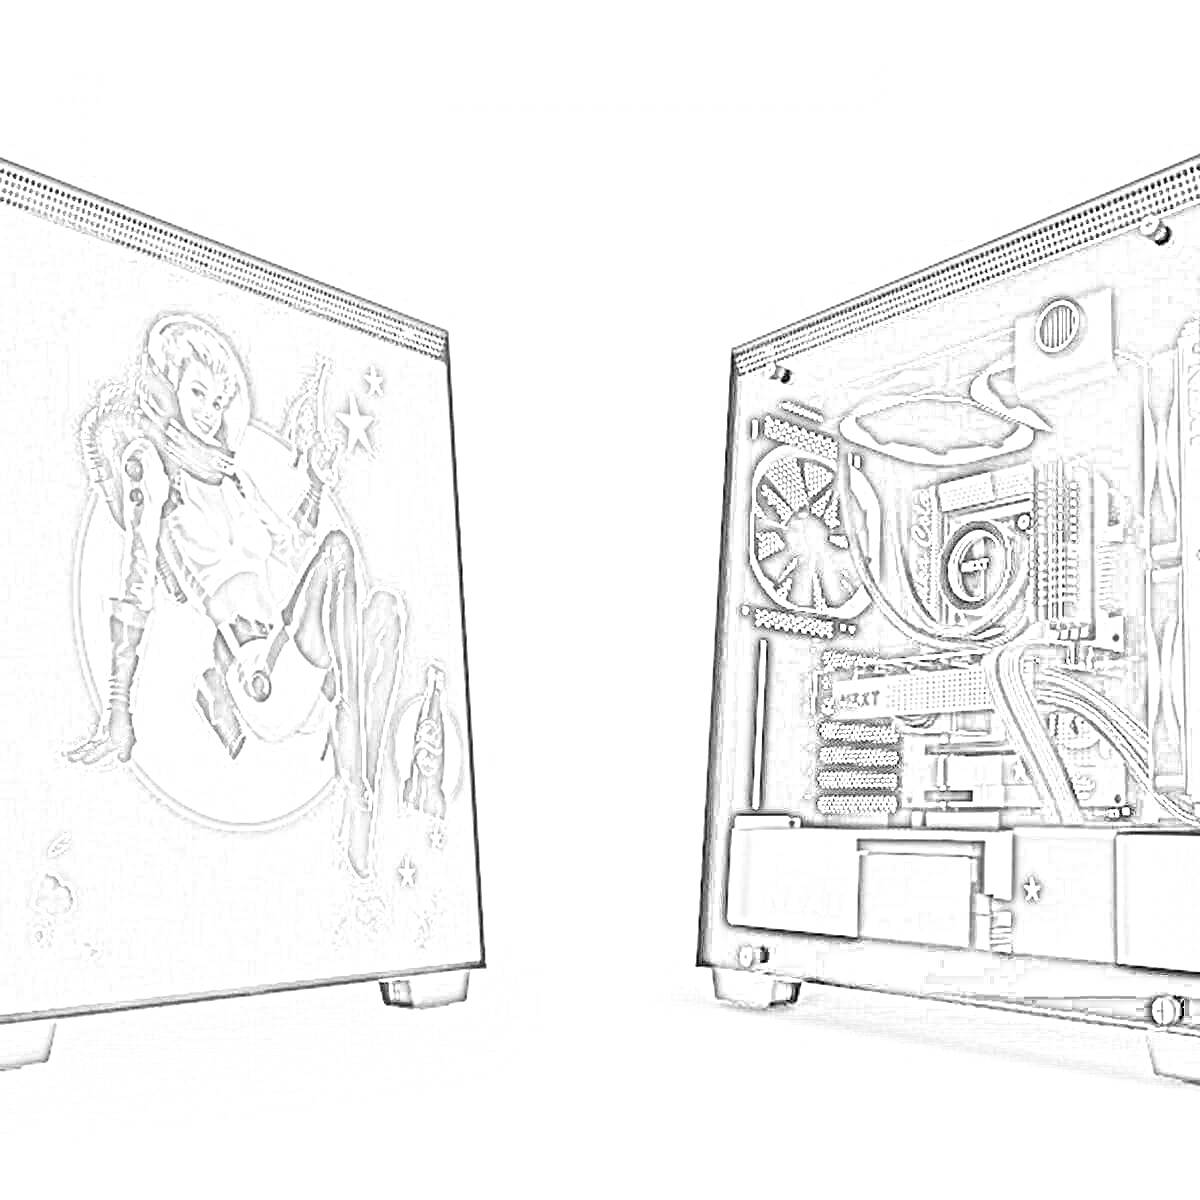 Раскраска Корпус ПК с боковой панелью с рисунком персонажа в космическом костюме и открытой панелью с установленными комплектующими (вентиляторы, кабели, водяное охлаждение, видеокарта, блок питания).